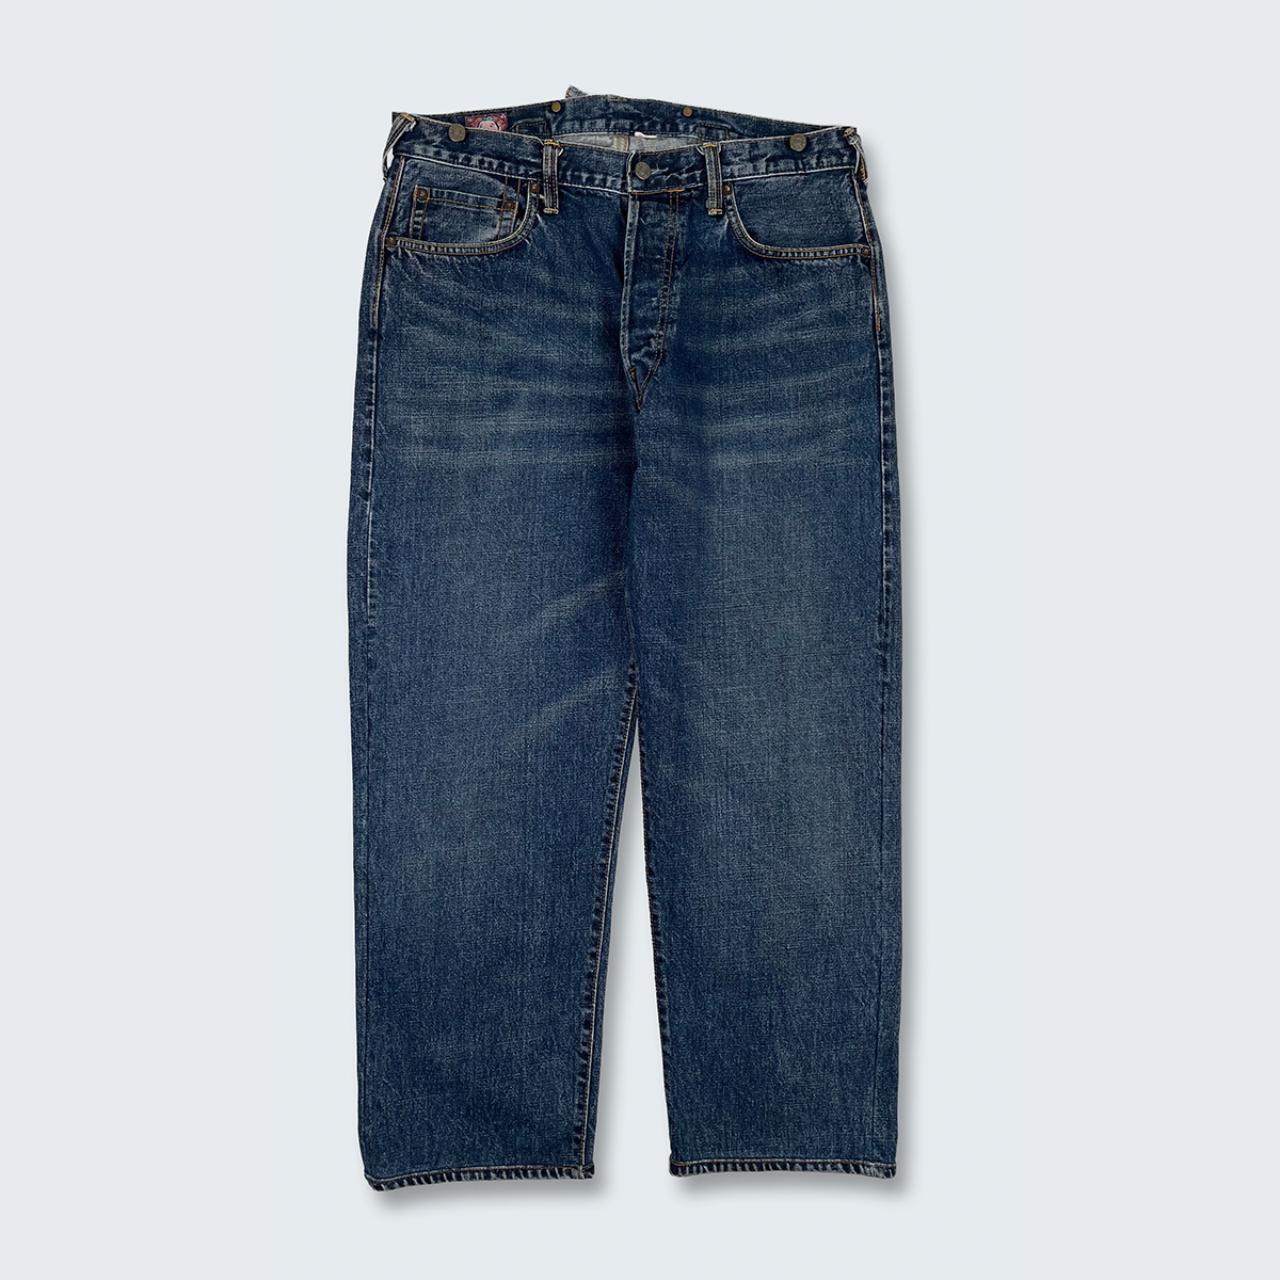 Authentic Vintage Evisu Jeans  (34")